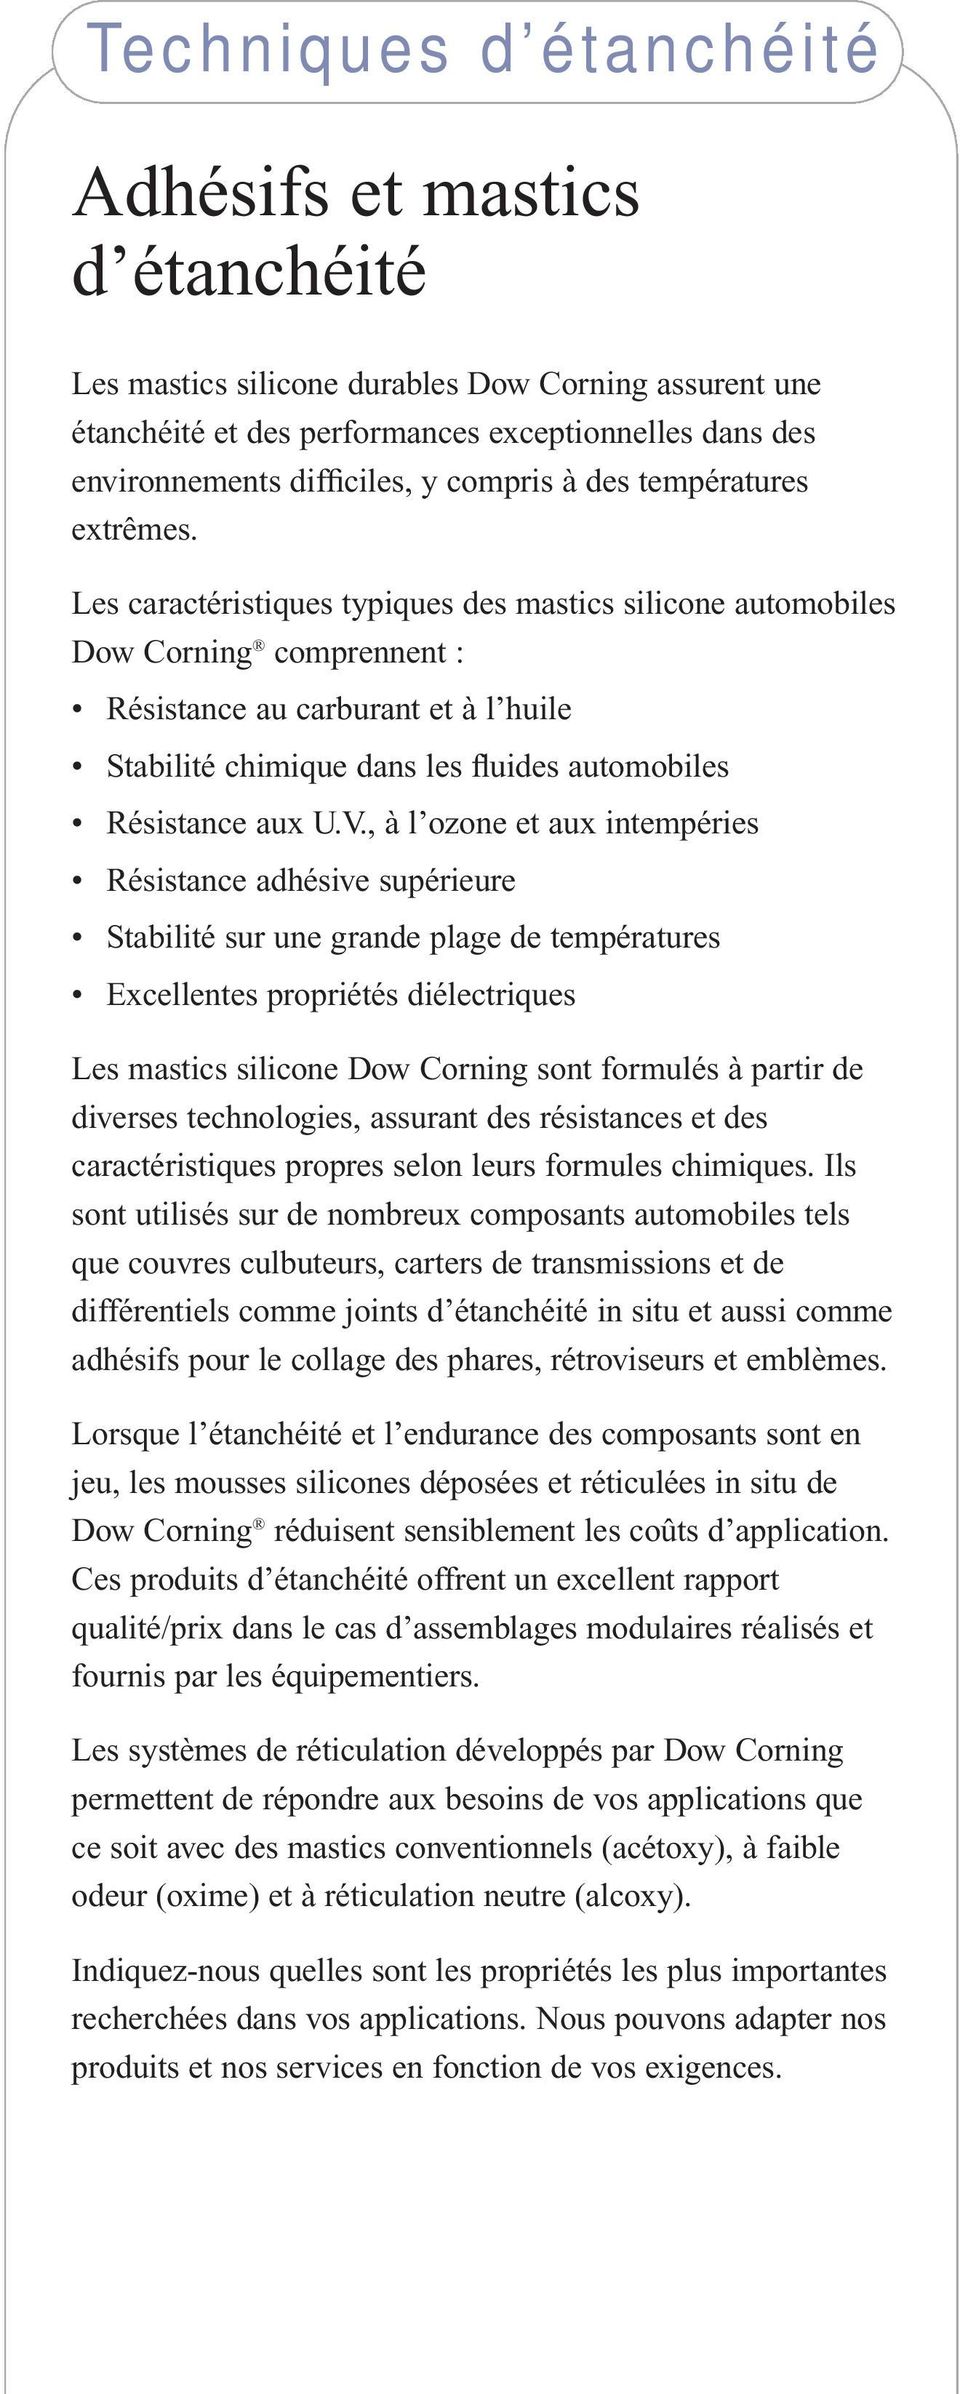 Les caractéristiques typiques des mastics silicone automobiles Dow Corning comprennent : Résistance au carburant et à l huile Stabilité chimique dans les fluides automobiles Résistance aux U.V.